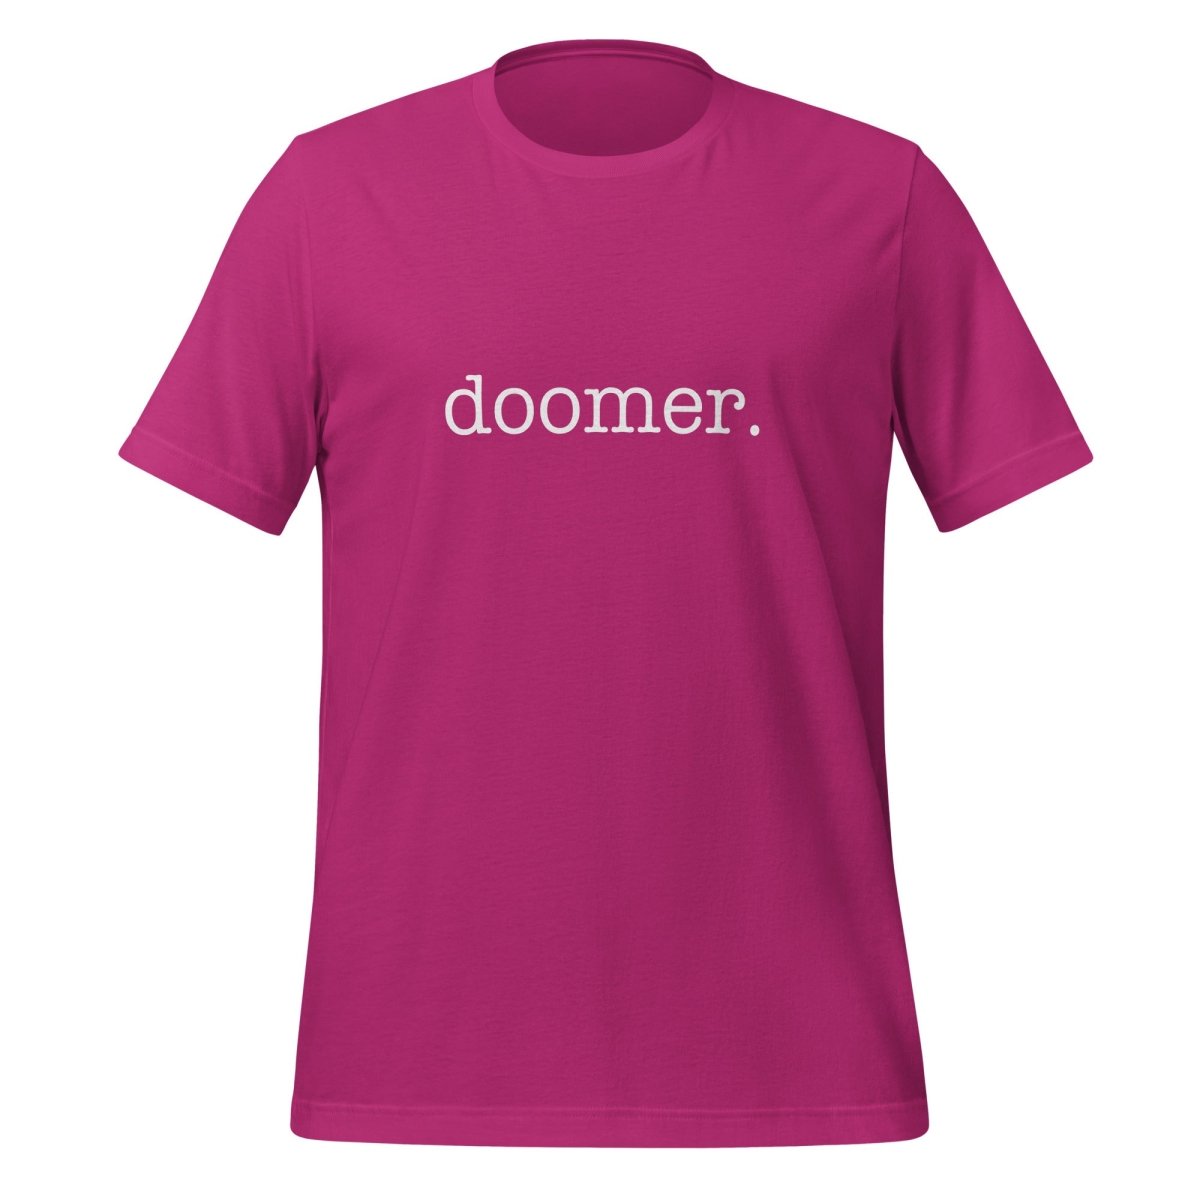 doomer. T - Shirt 1 (unisex) - Berry - AI Store